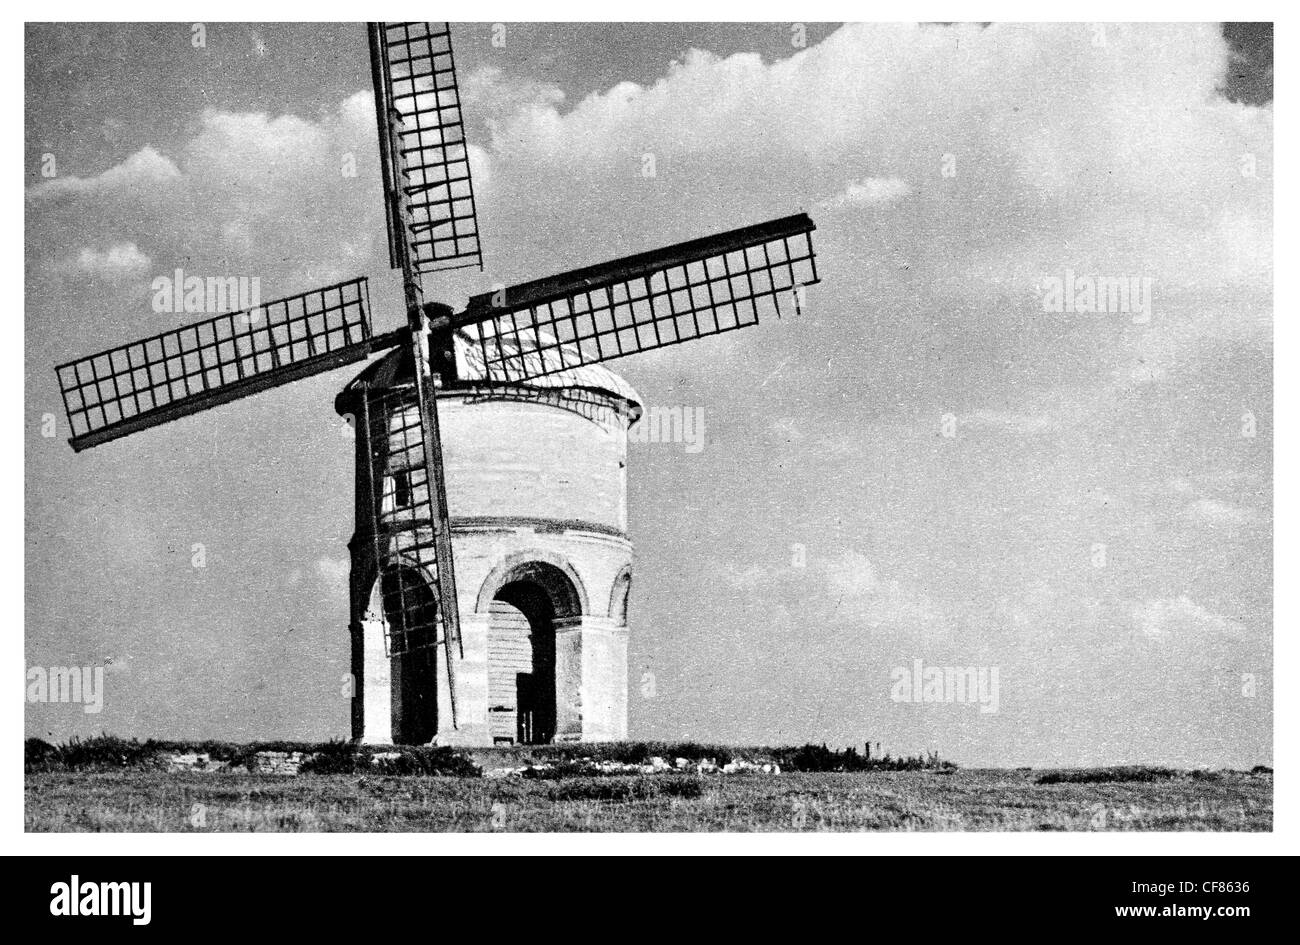 Windmühle Chesterton gewölbt Basis Warwickshire Denkmalschutz ich Wahrzeichen Inigo Jones West Midlands England Europa UK Erholung Mühle Stockfoto